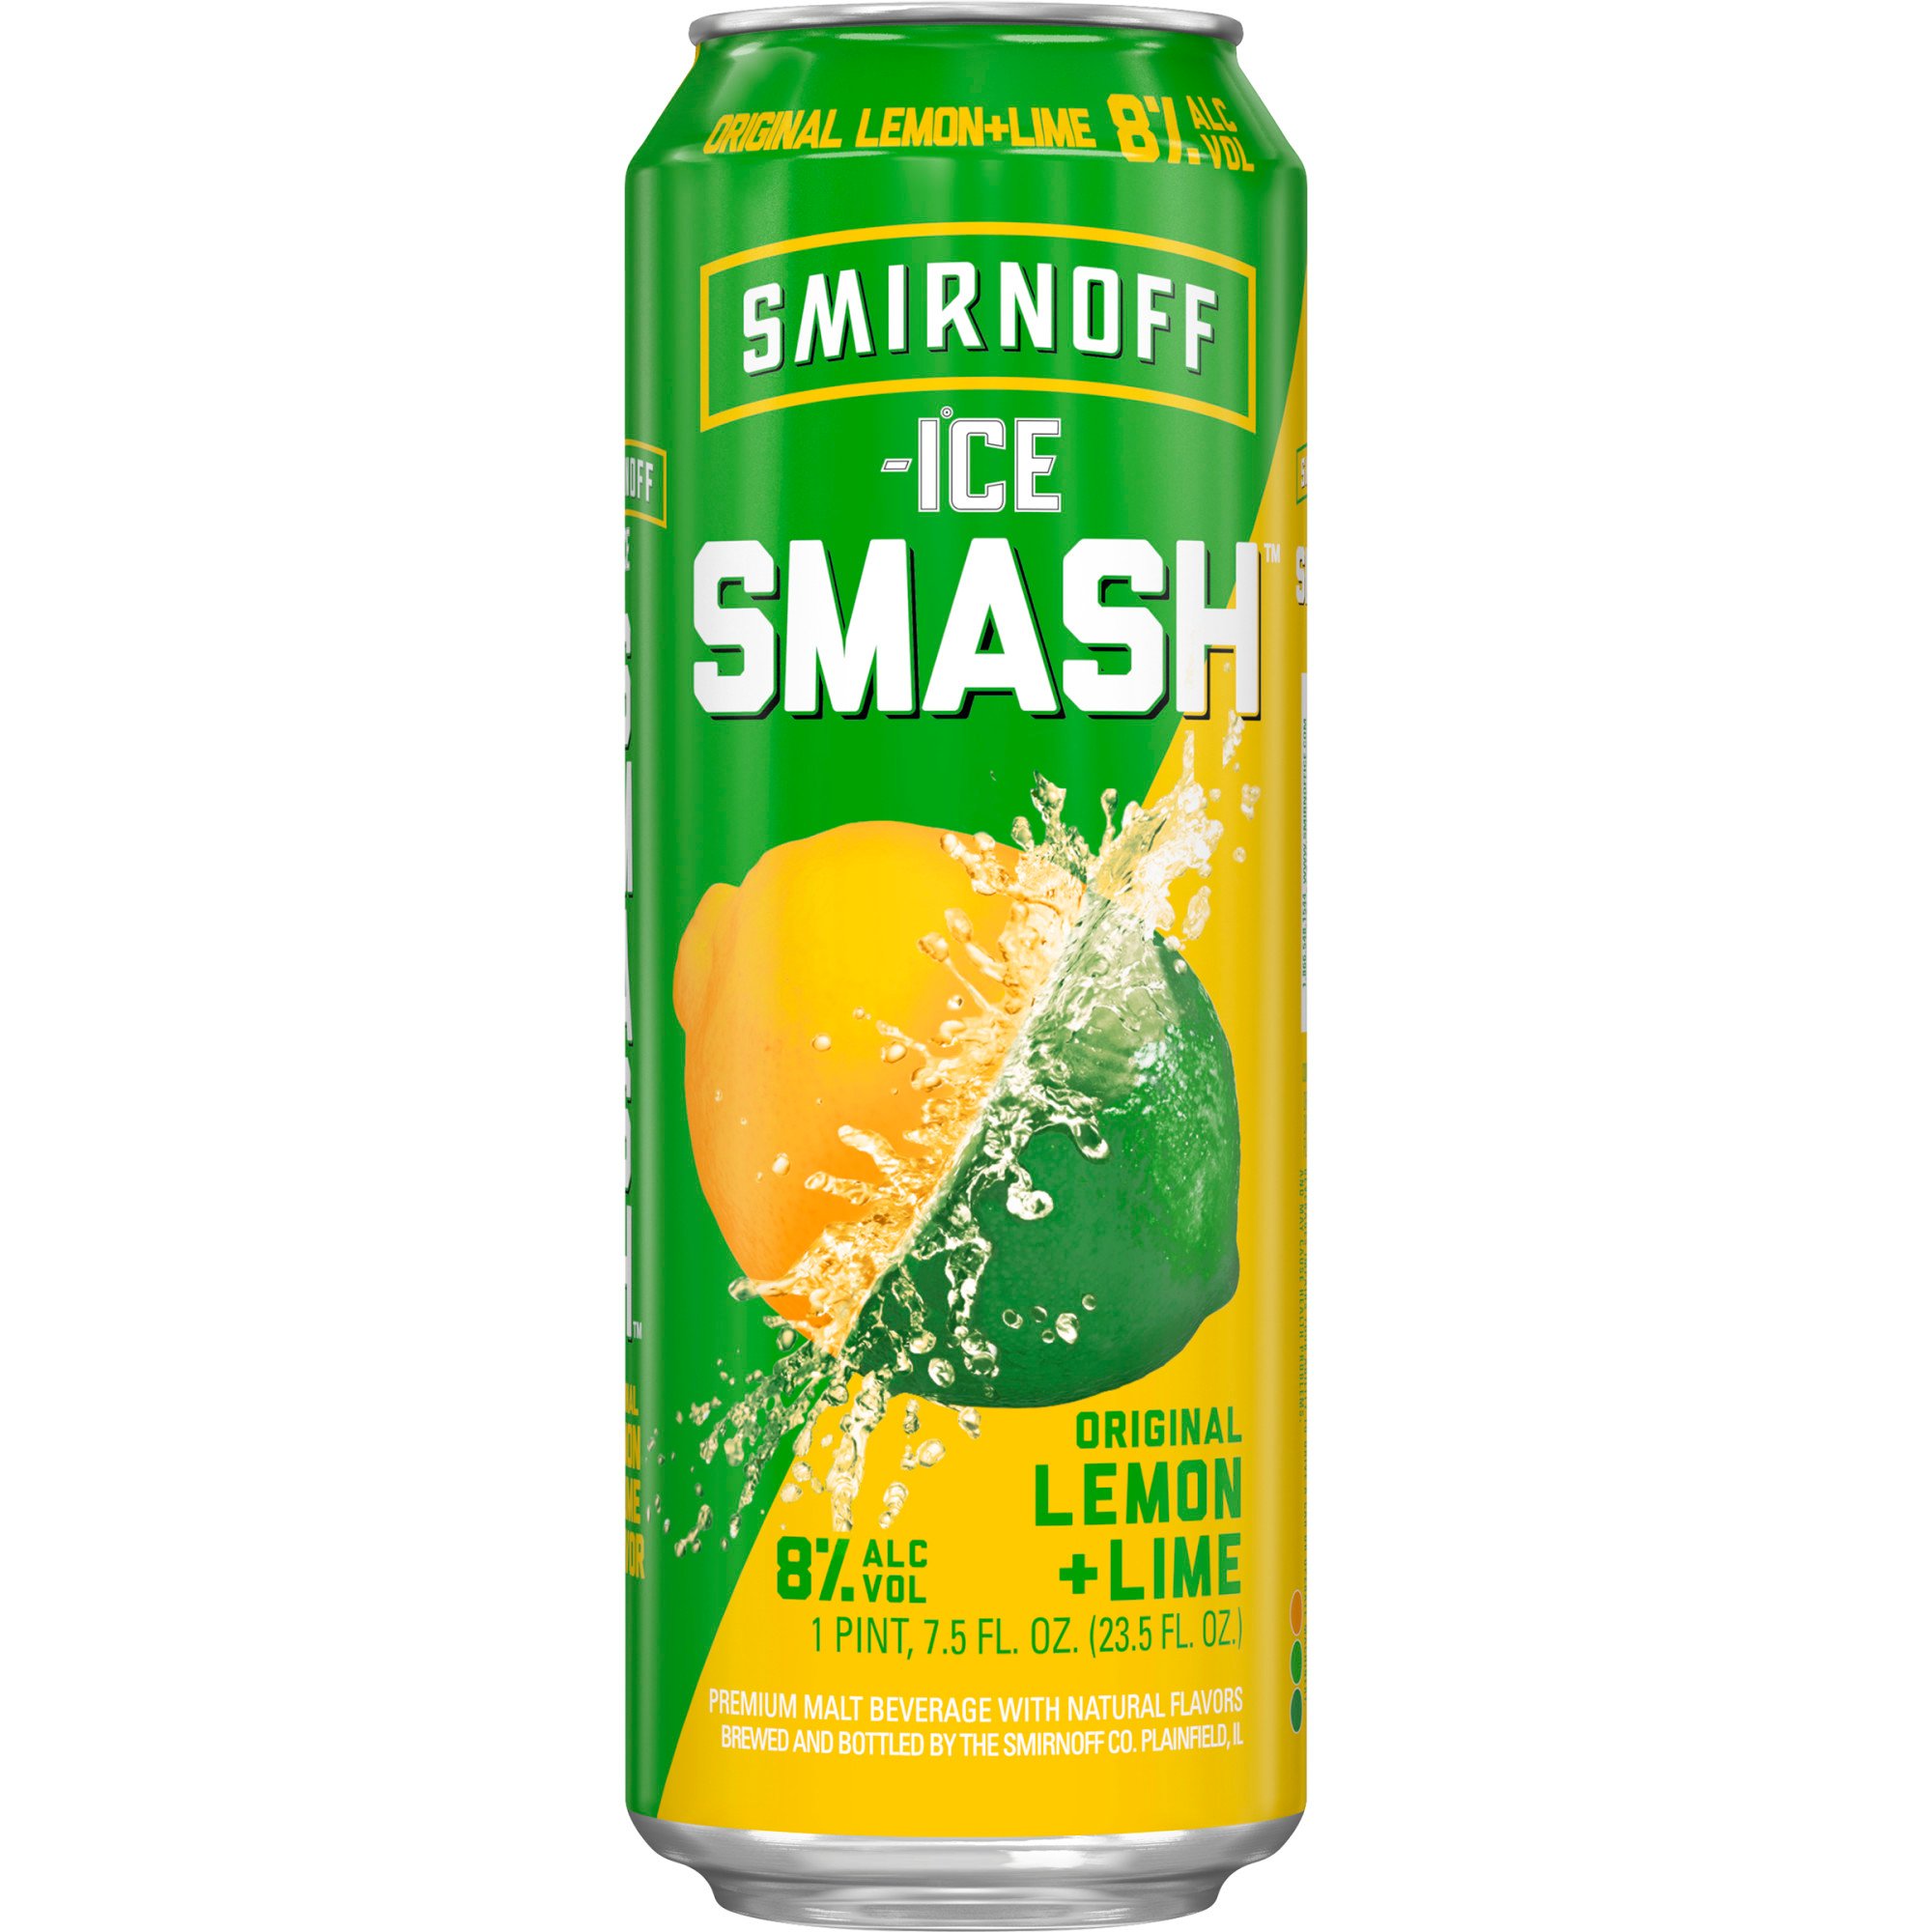 Smirnoff Ice Smash Lemon Lime ‑ Shop Malt Beverages & Coolers at H‑E‑B